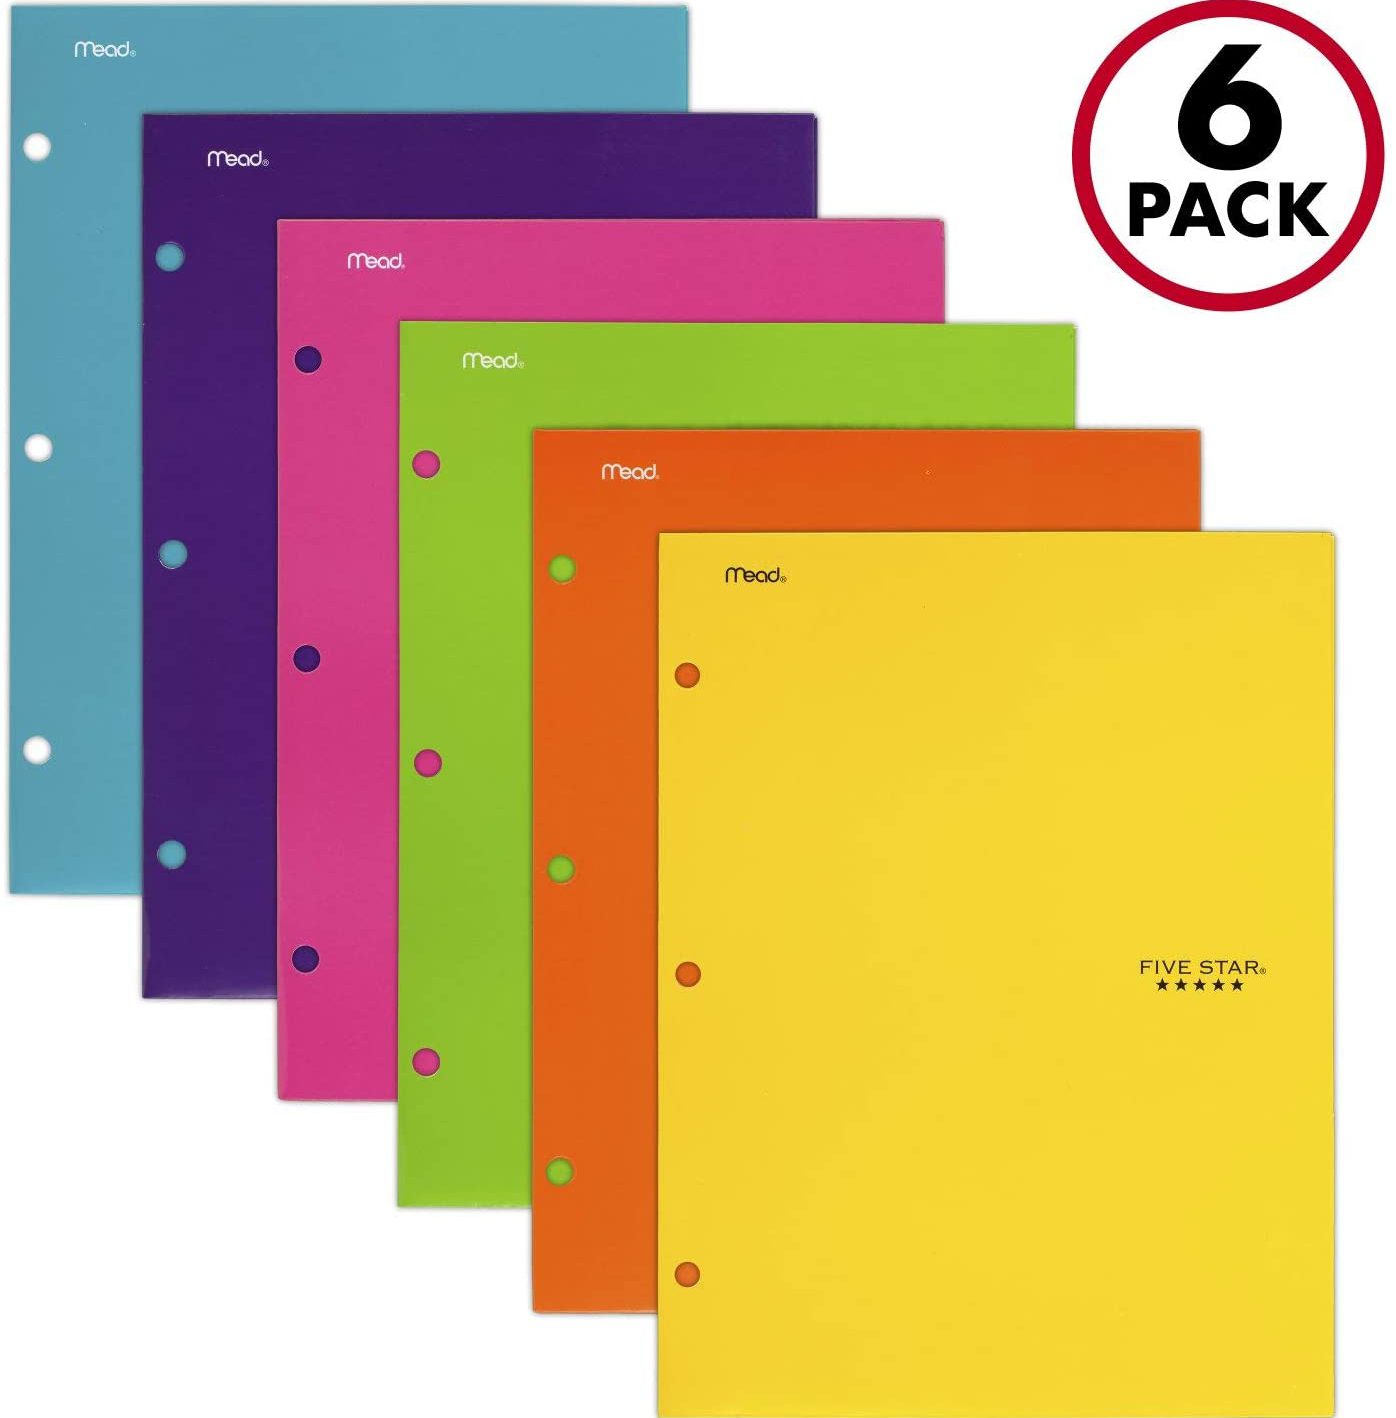 A Pack Of Six Folders